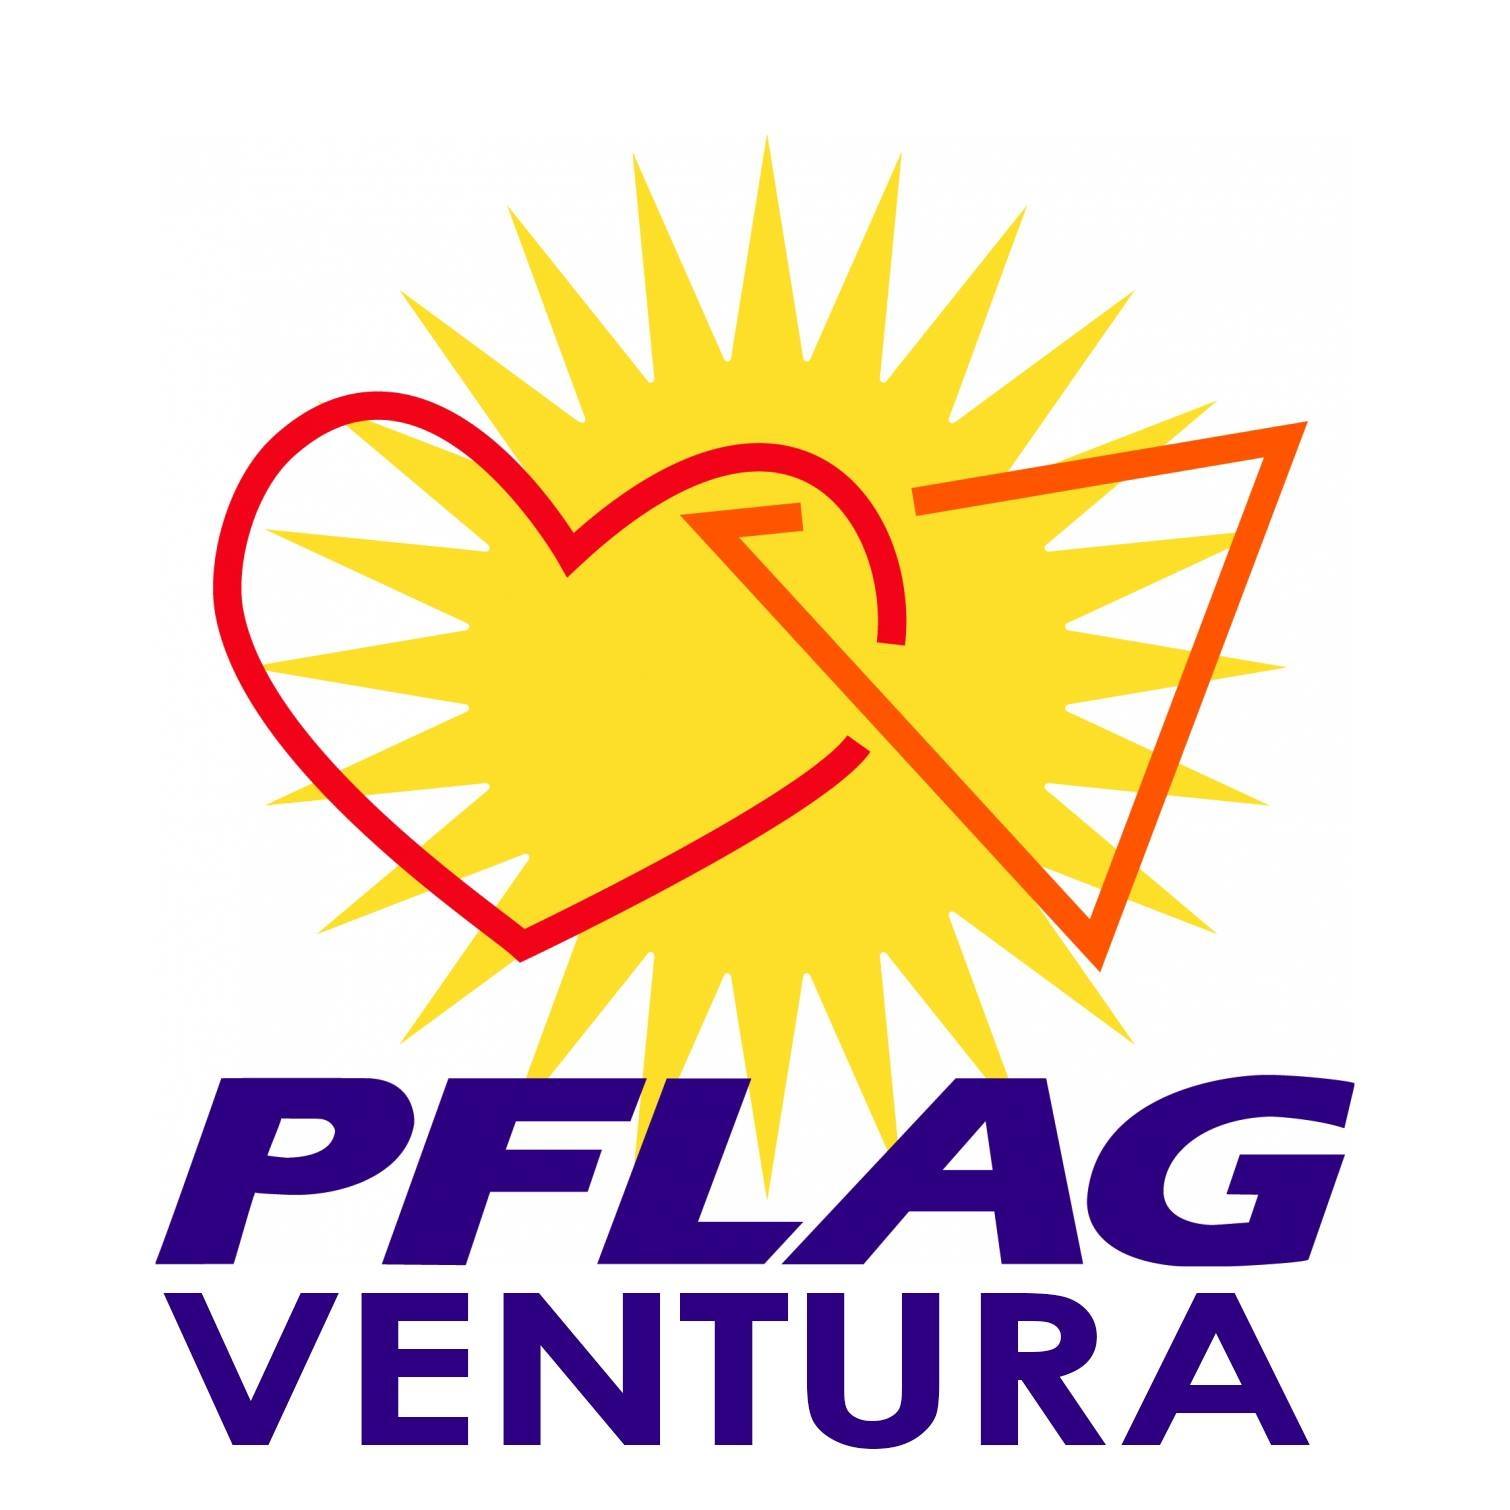 LGBTQ Organization in San Francisco California - PFLAG Ventura